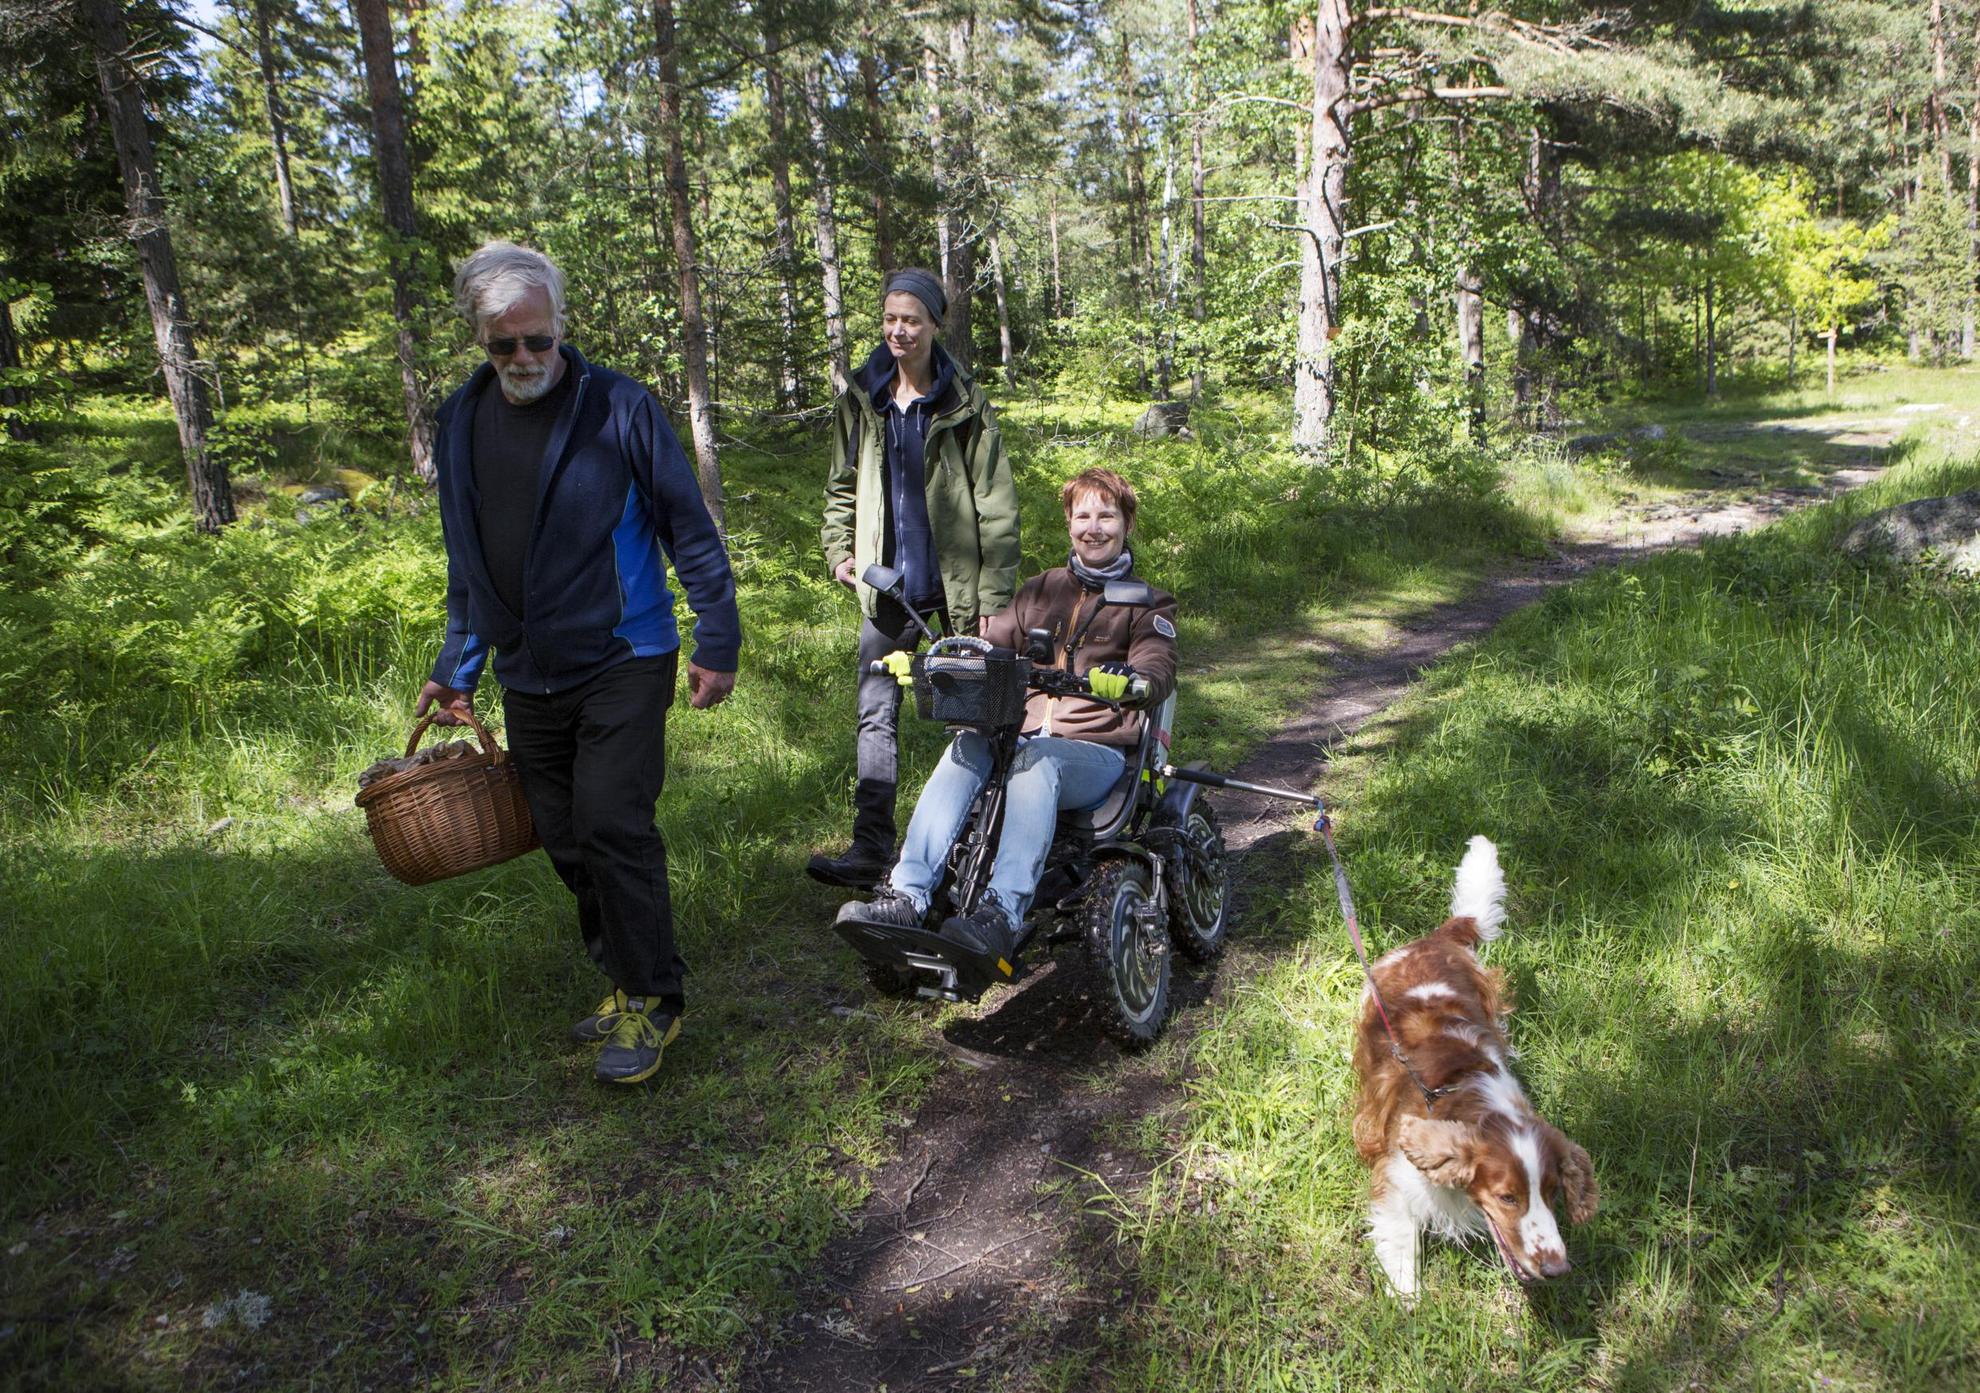 Een man wandelt voorop in het bos met een mandje in zijn handen. Achter hem zijn twee dames, waarvan iemand in een elektrische vierwieler zit. Een hond loopt in de berm.